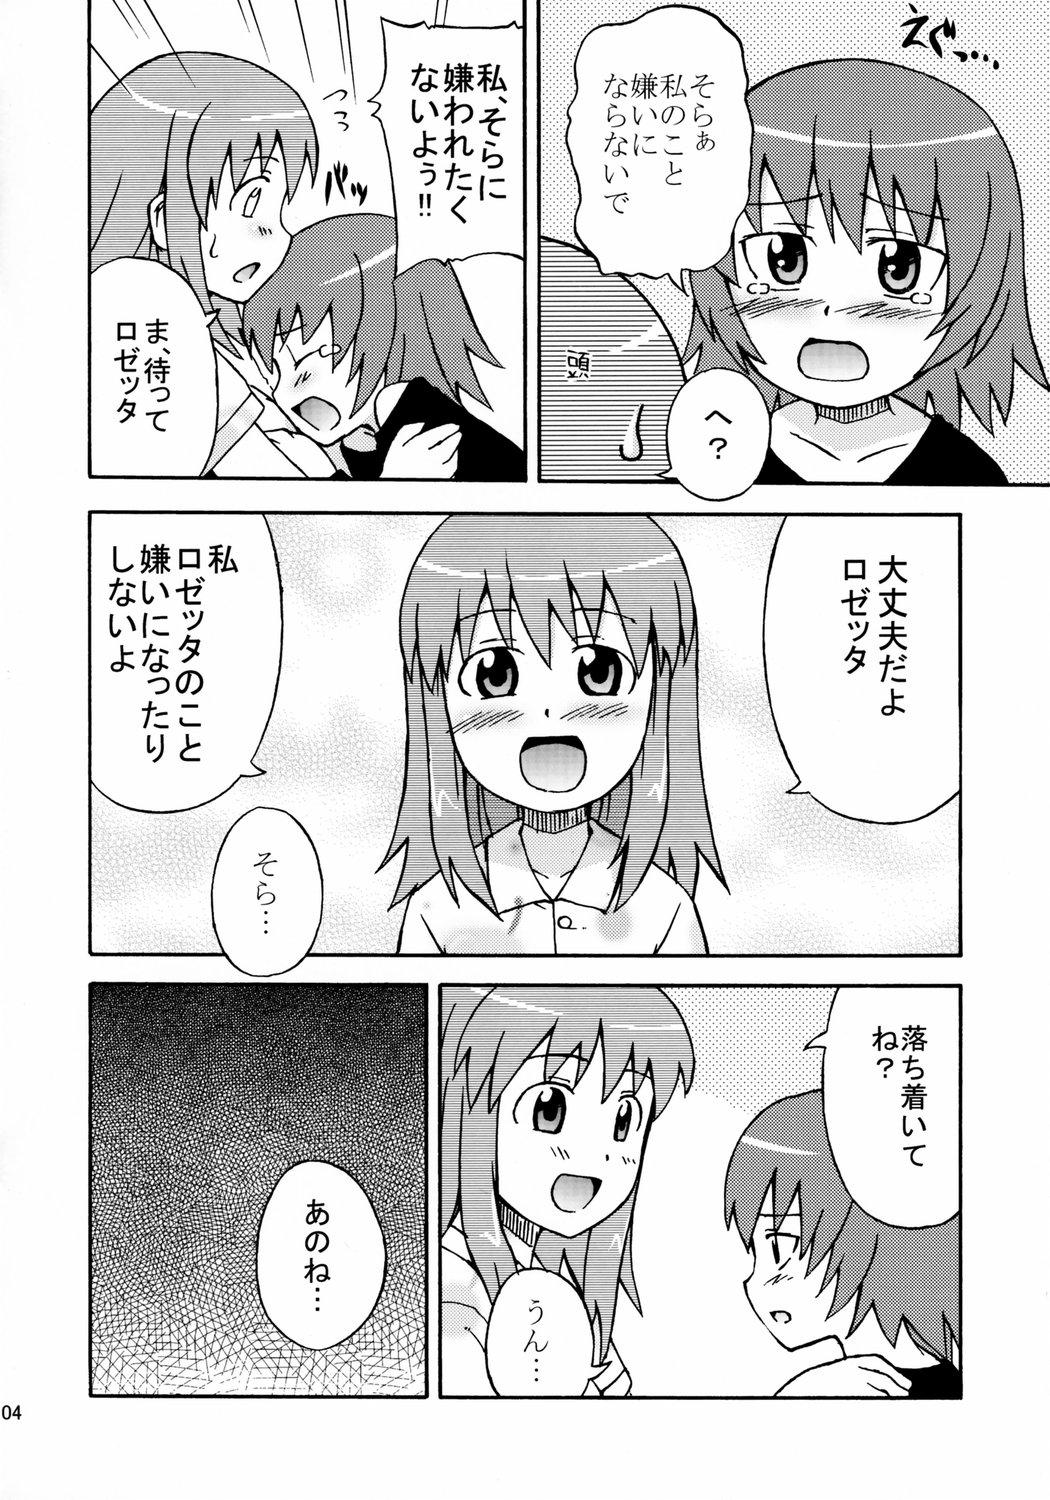 Romance Sora Sora Muchu - Kaleido star Ngentot - Page 5